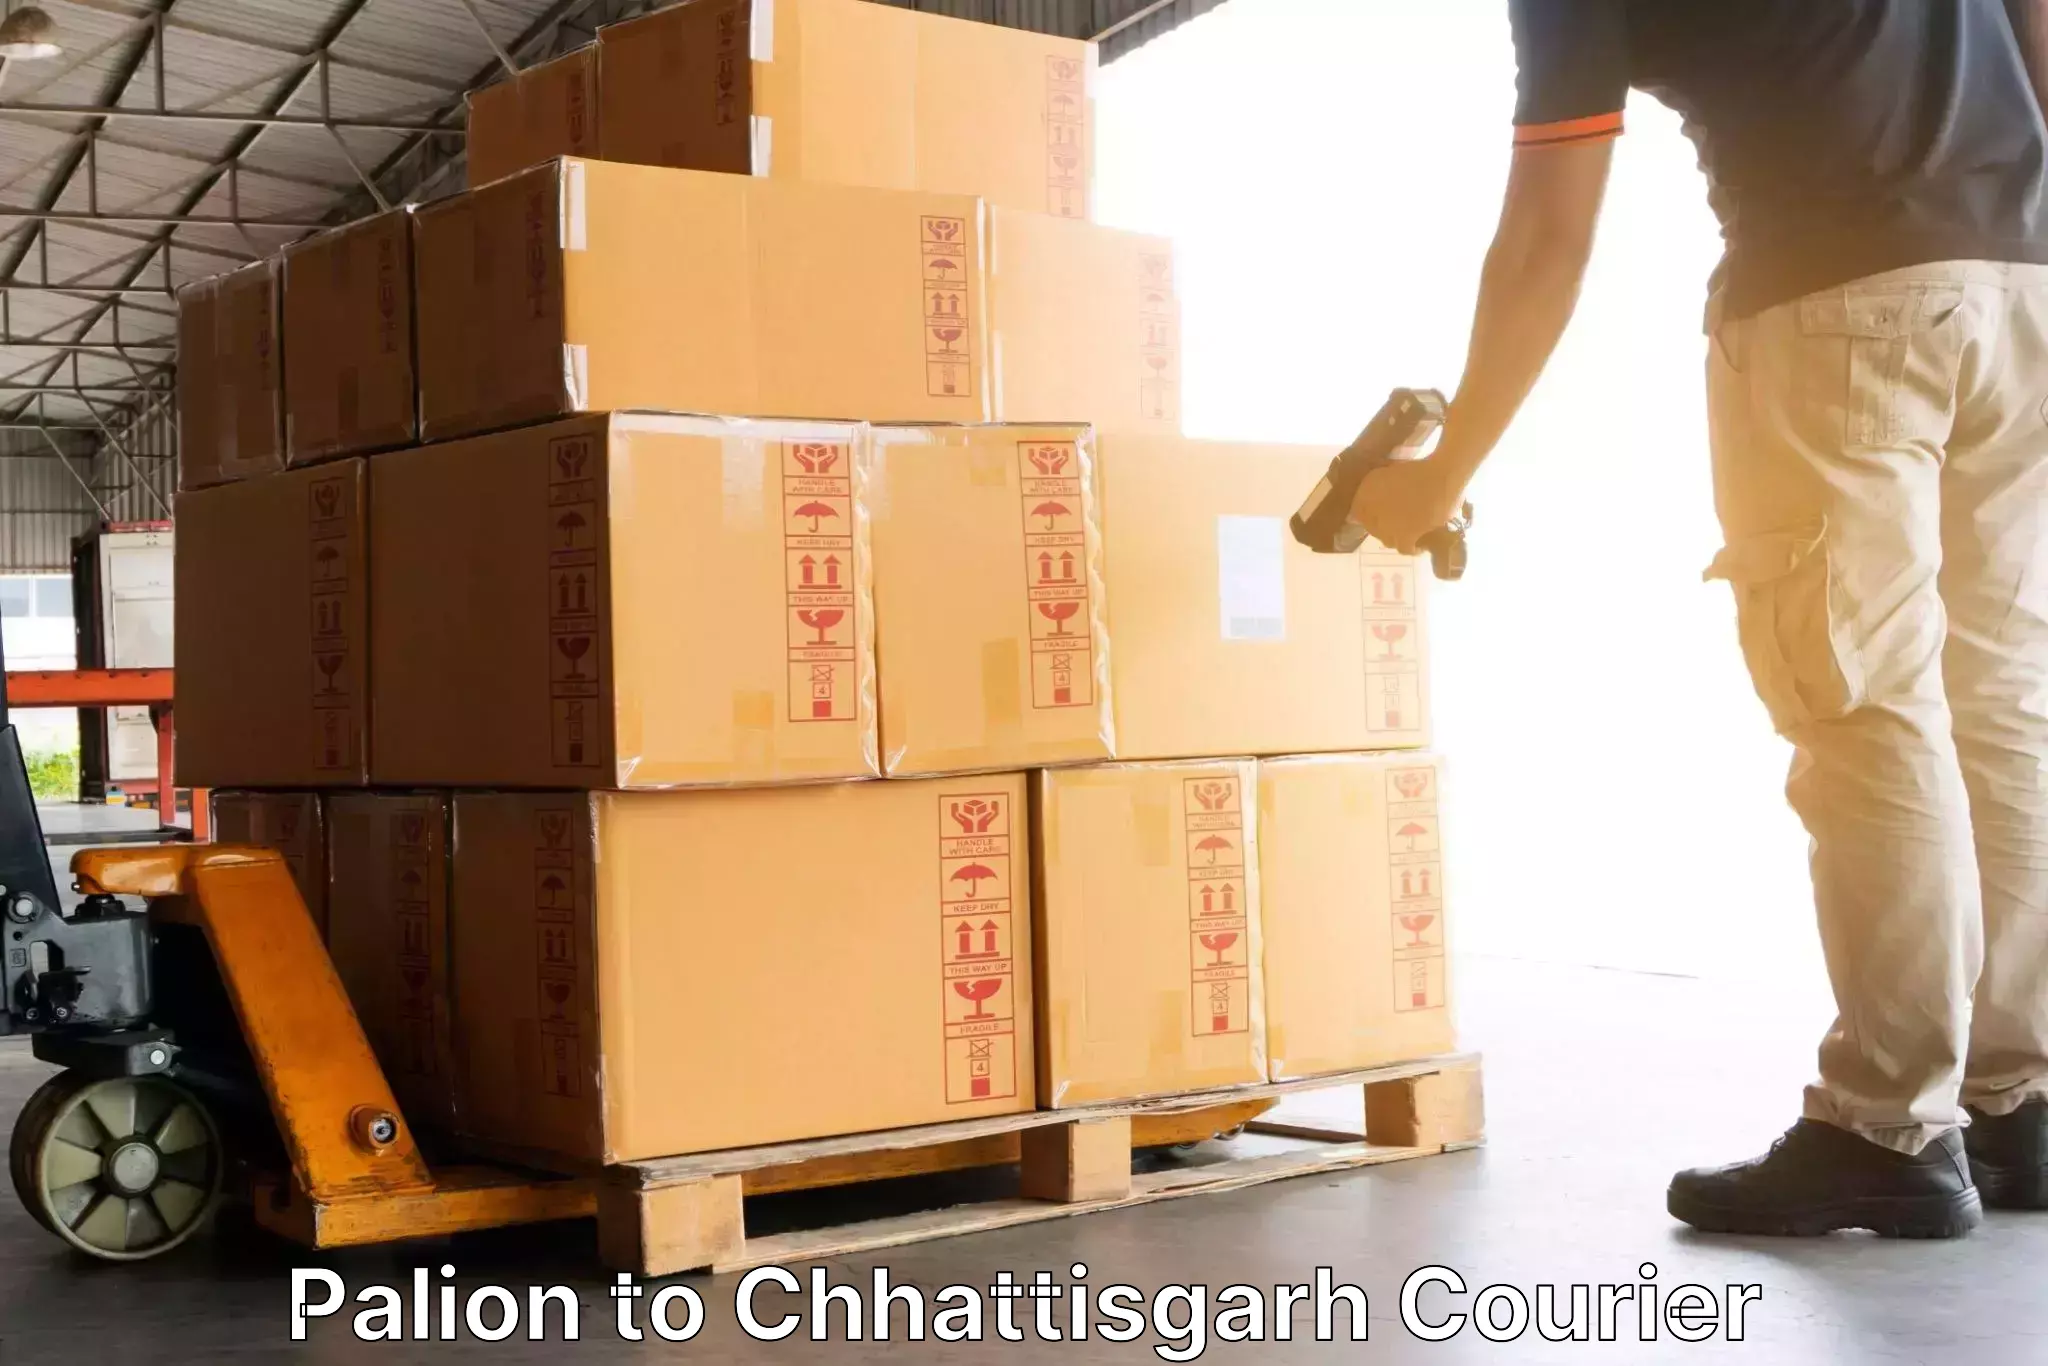 Flexible delivery scheduling Palion to Bijapur Chhattisgarh